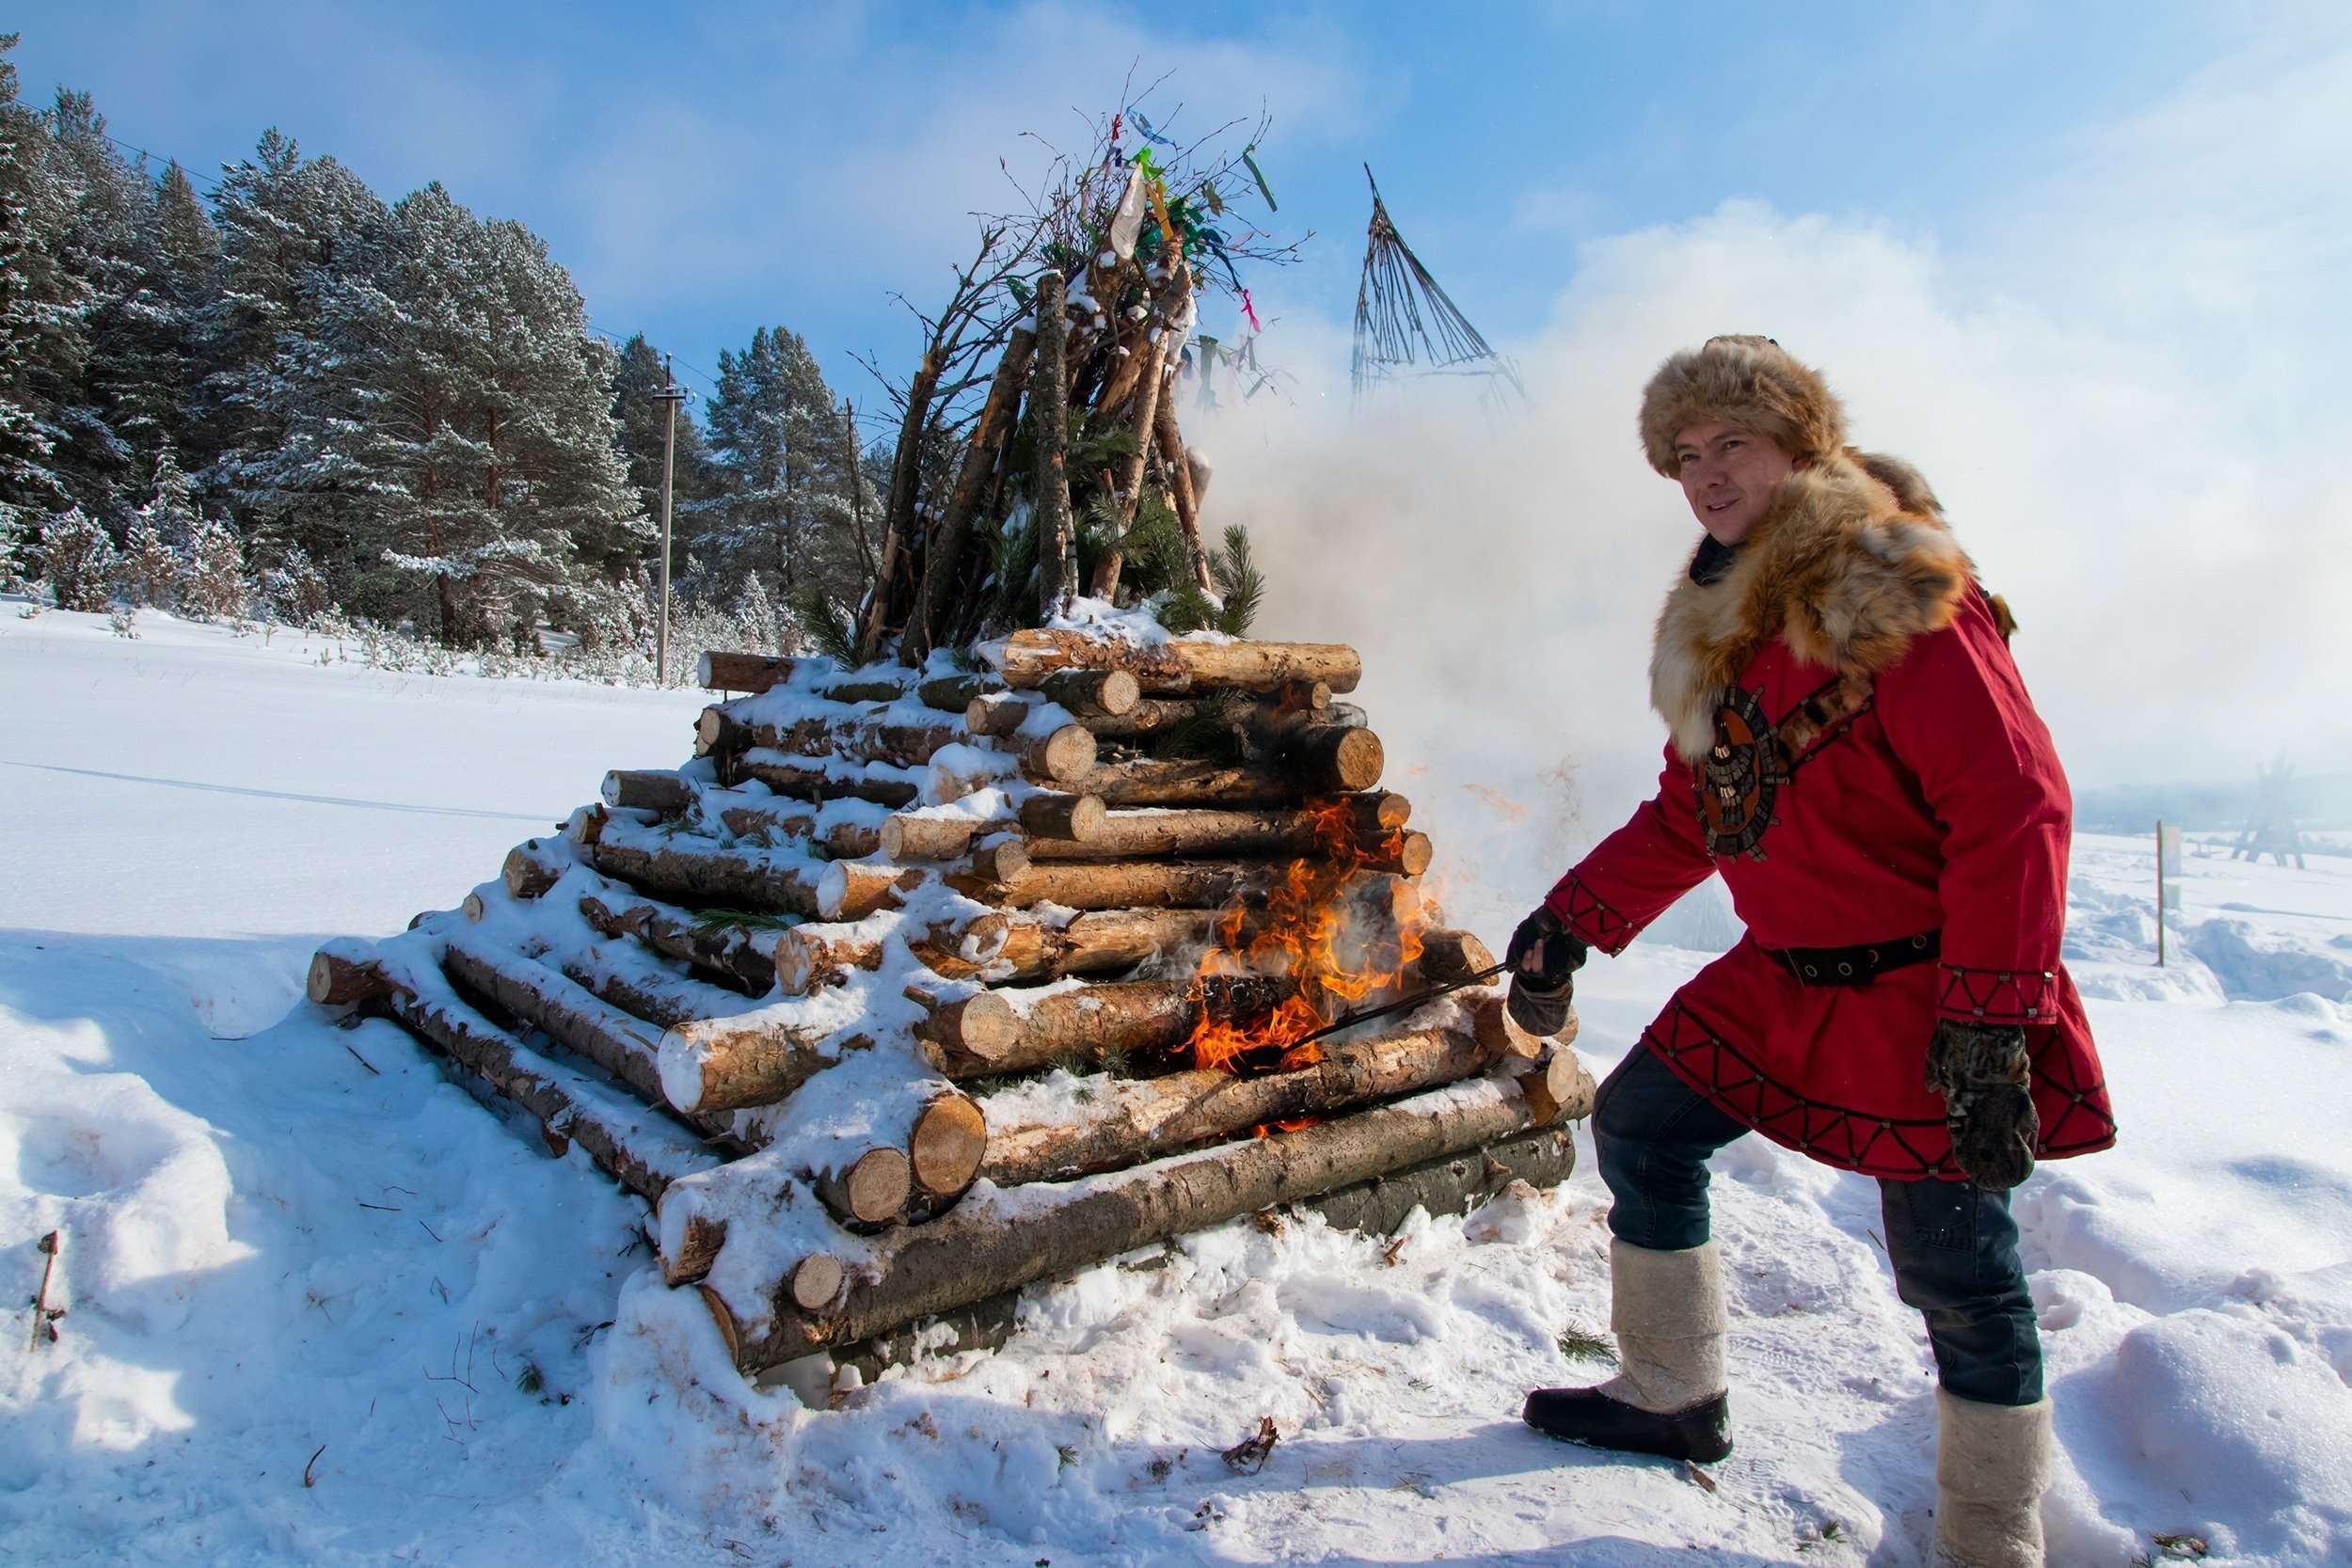 

Фестиваль «Огни ДондыДора» в Удмуртии перенесли из-за морозов

